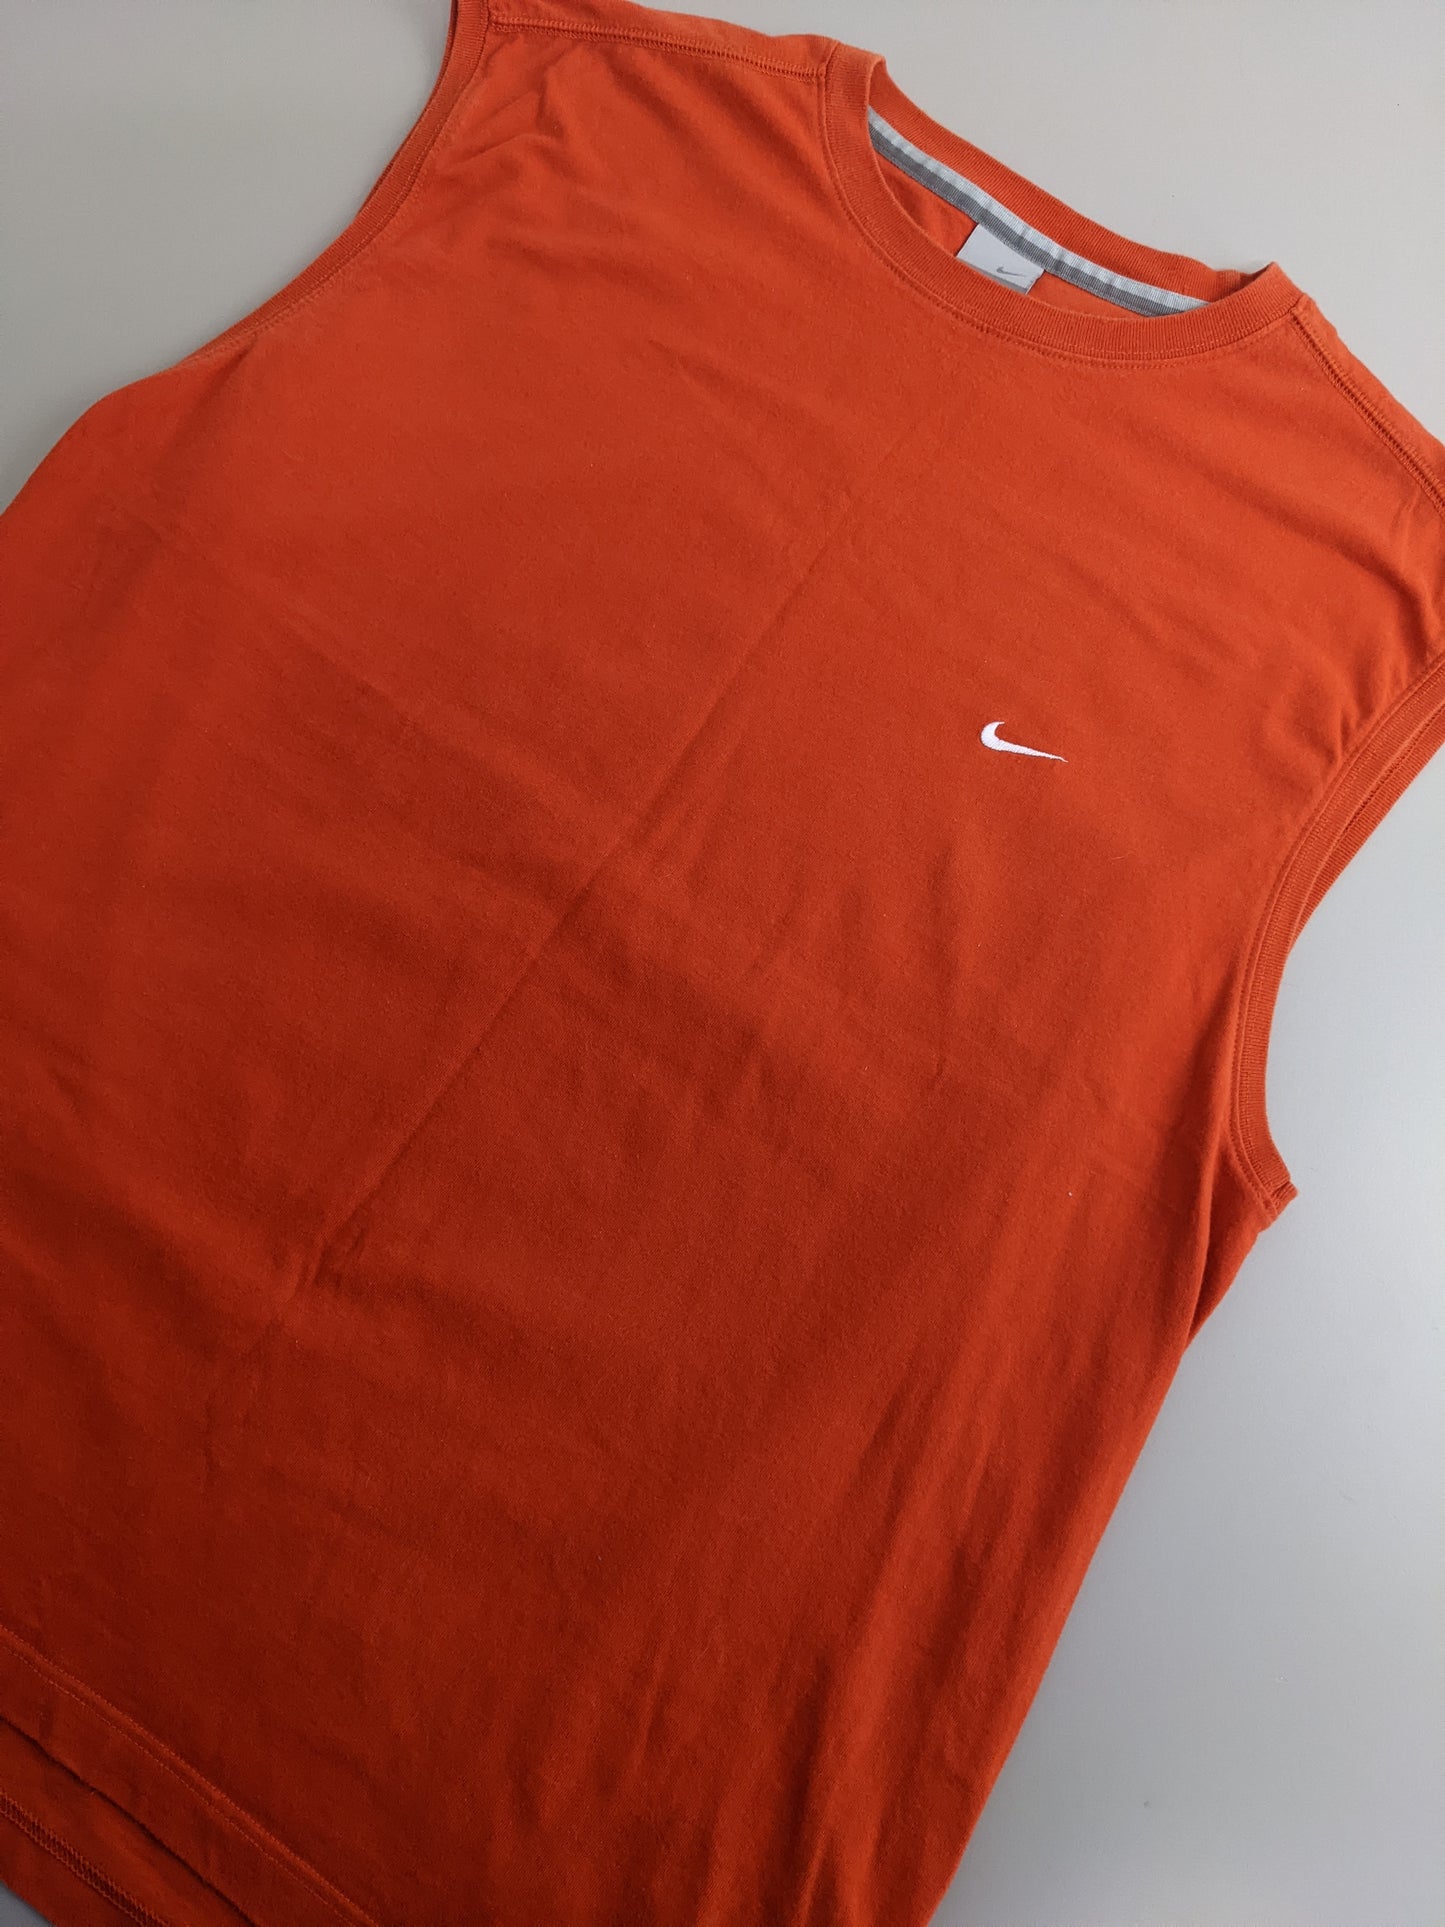 00s Nike Tanktop / T-shirt Orange  XL